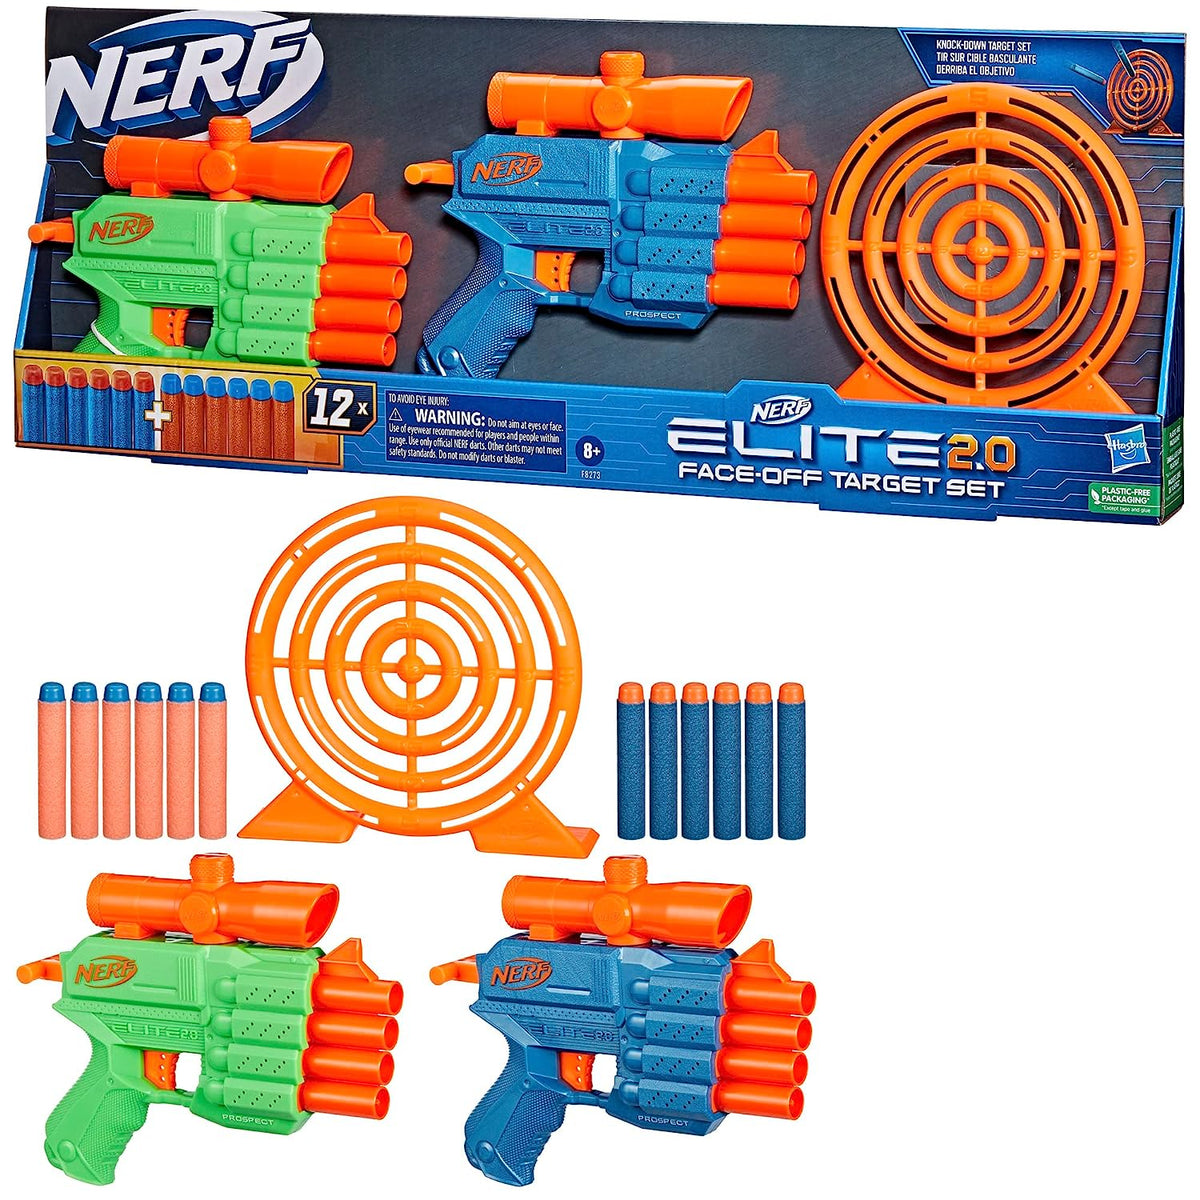 Nerf Elite 2.0 Face Off Target Set, Includes 2 Dart Blasters & Target & 12 Nerf Elite Darts, Toy Foam Blasters for Kids Outdoor Games